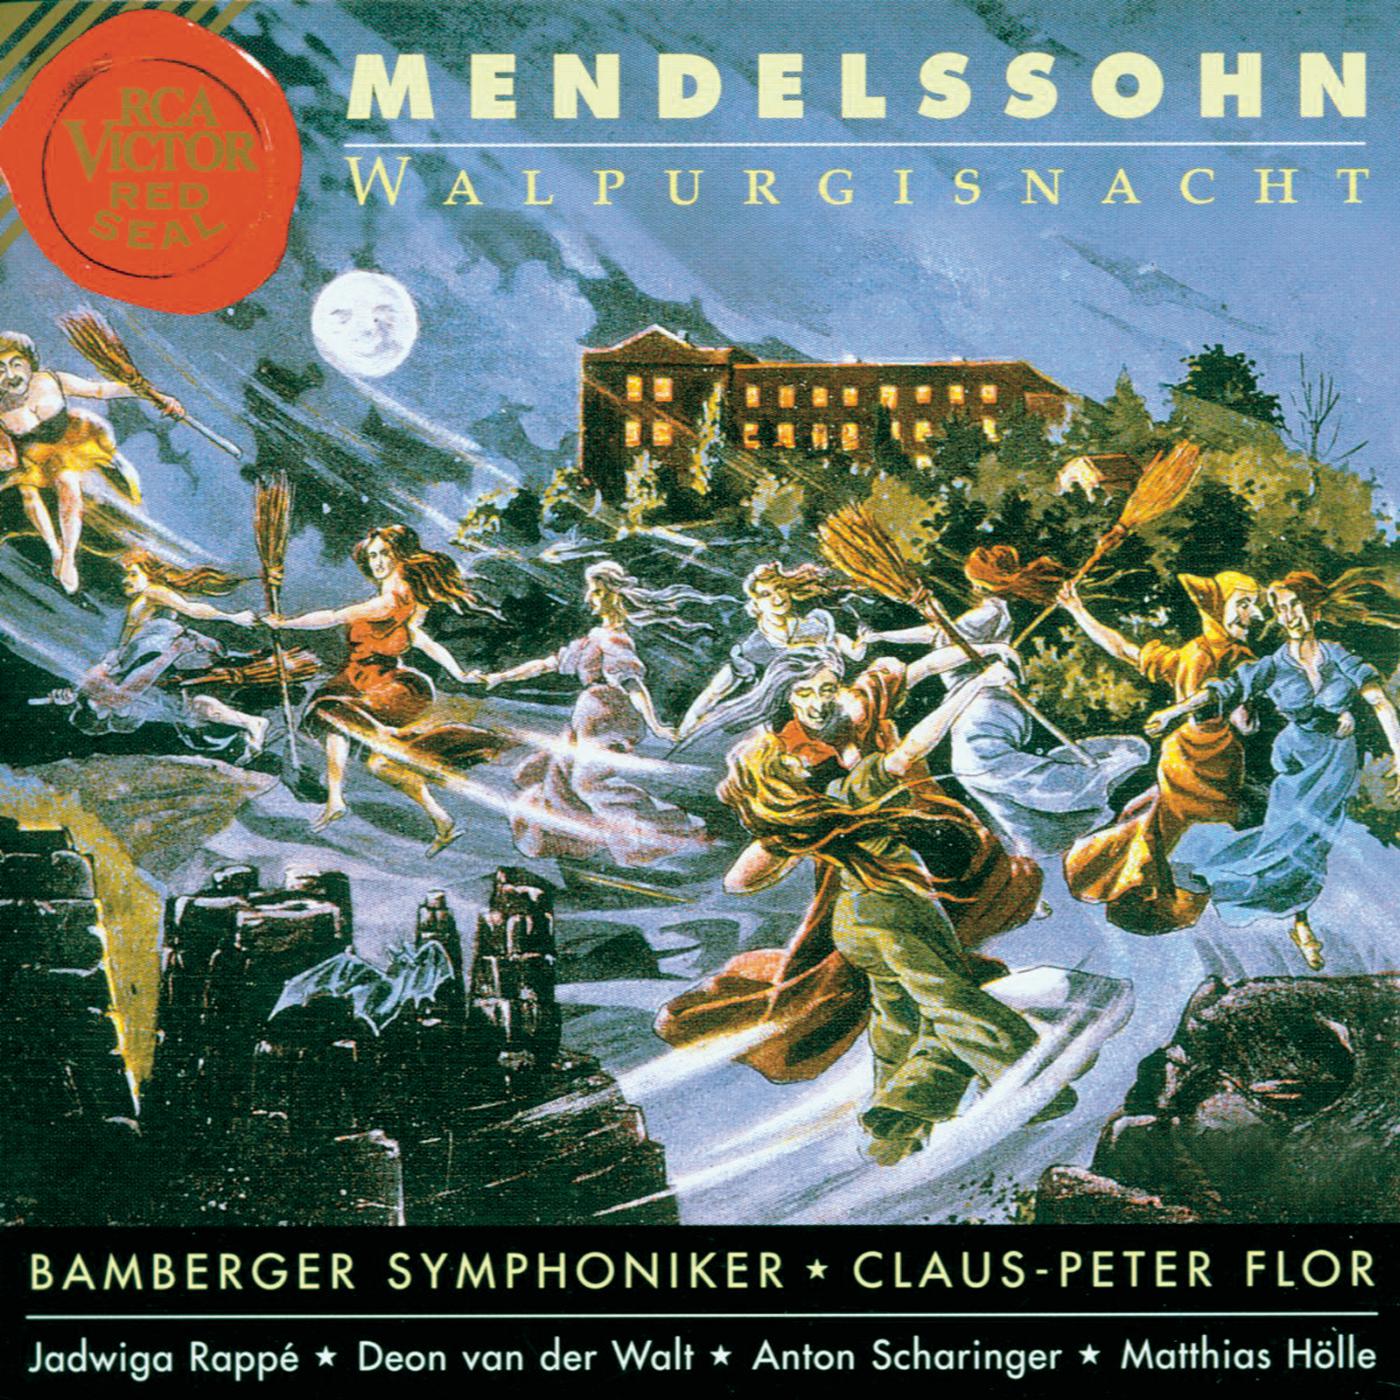 Leise zieht durch mein Gemü th, 12 Lieder von Mendelssohn, Arr. for Orchestra by Siegfried Matthus: Der Mond, Op. 86, No. 5: " Mein Herz ist wie die dunkle Nacht"